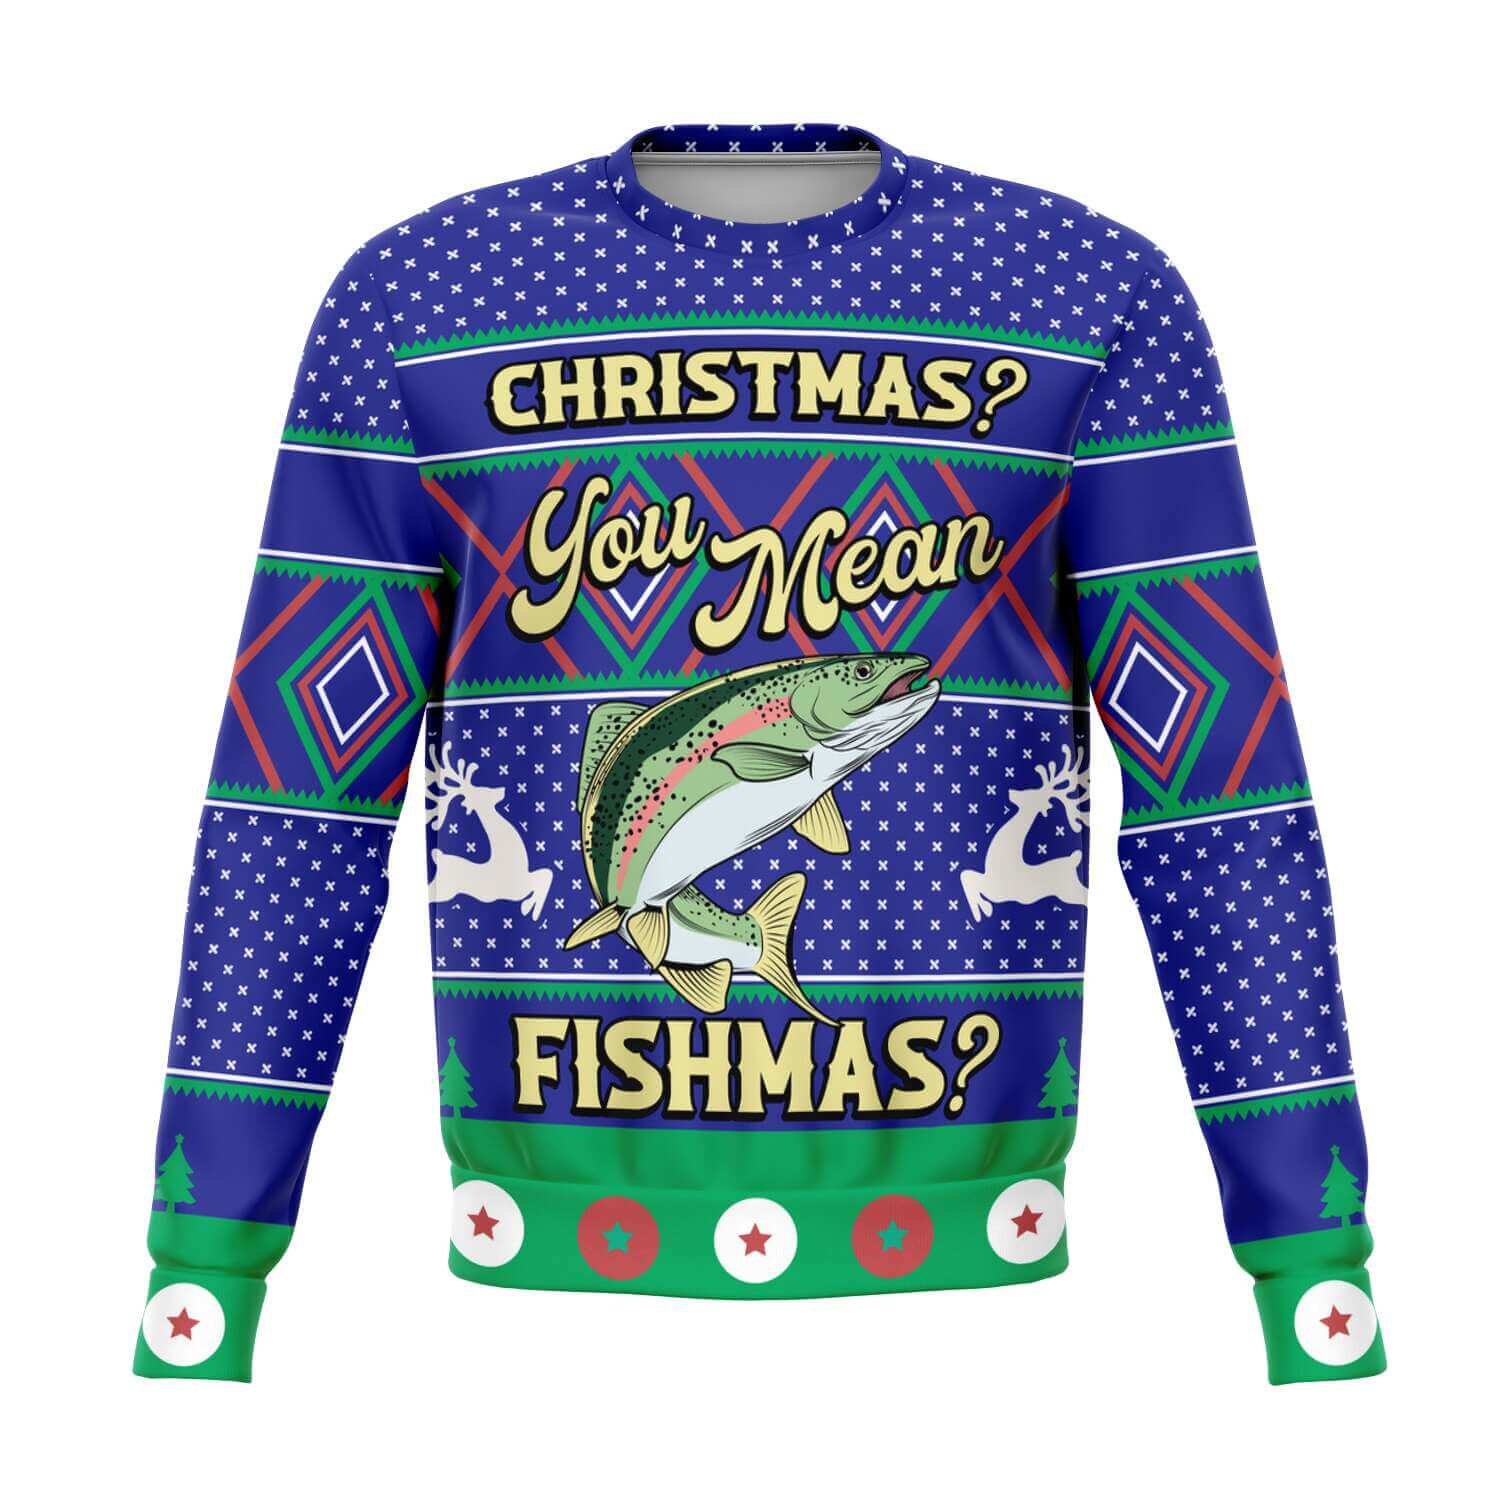 You Mean Fishmas - Merry Fishmas-Athletic-Fashion-sweatshirt